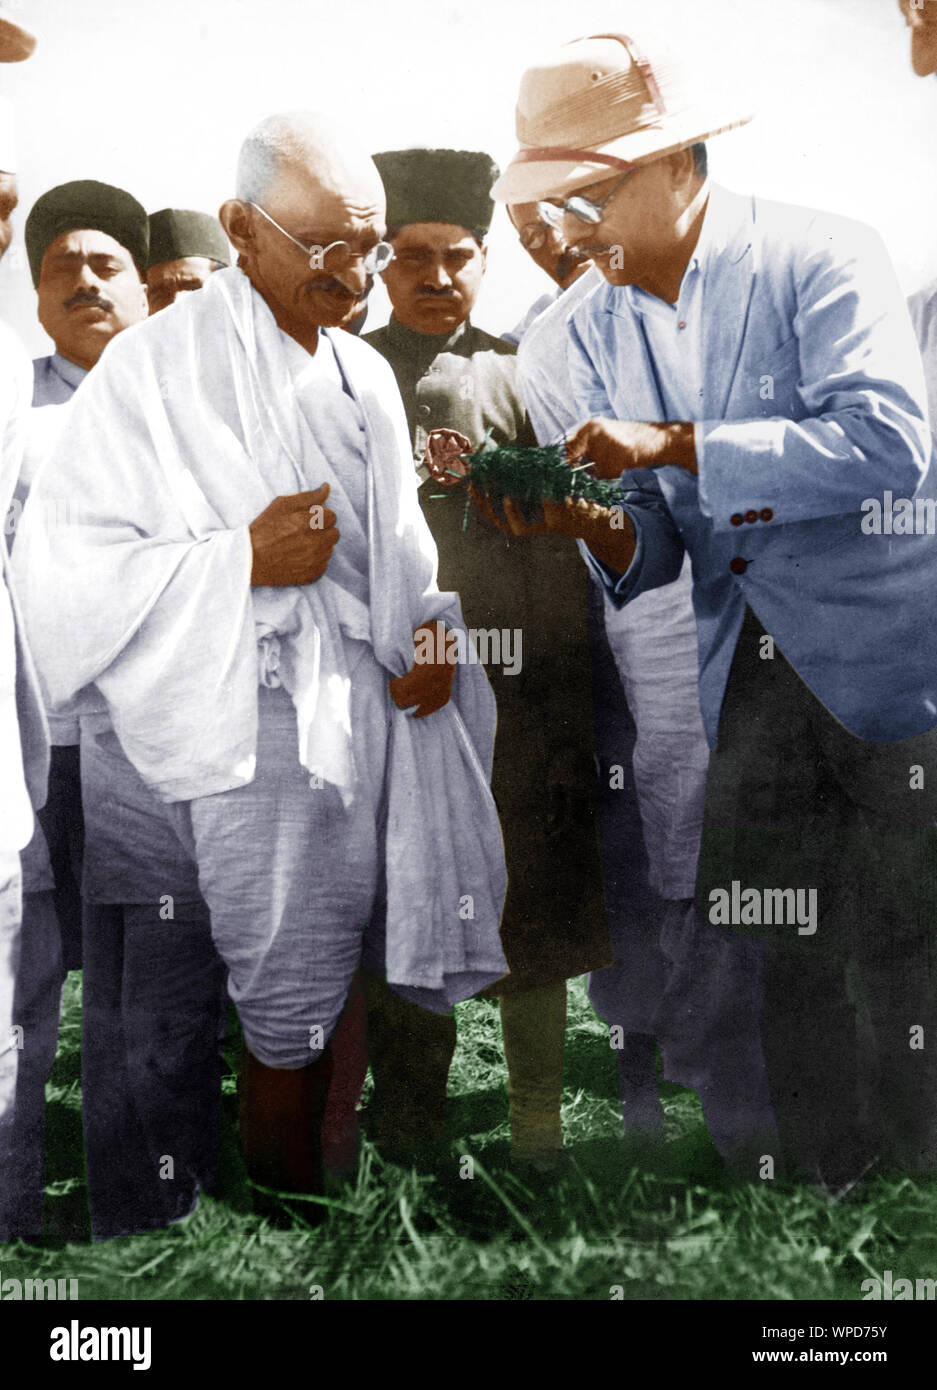 Il Mahatma Gandhi getting farm compost mostrato e spiegato da farm sovrintendente, India, Asia, 1930 Foto Stock